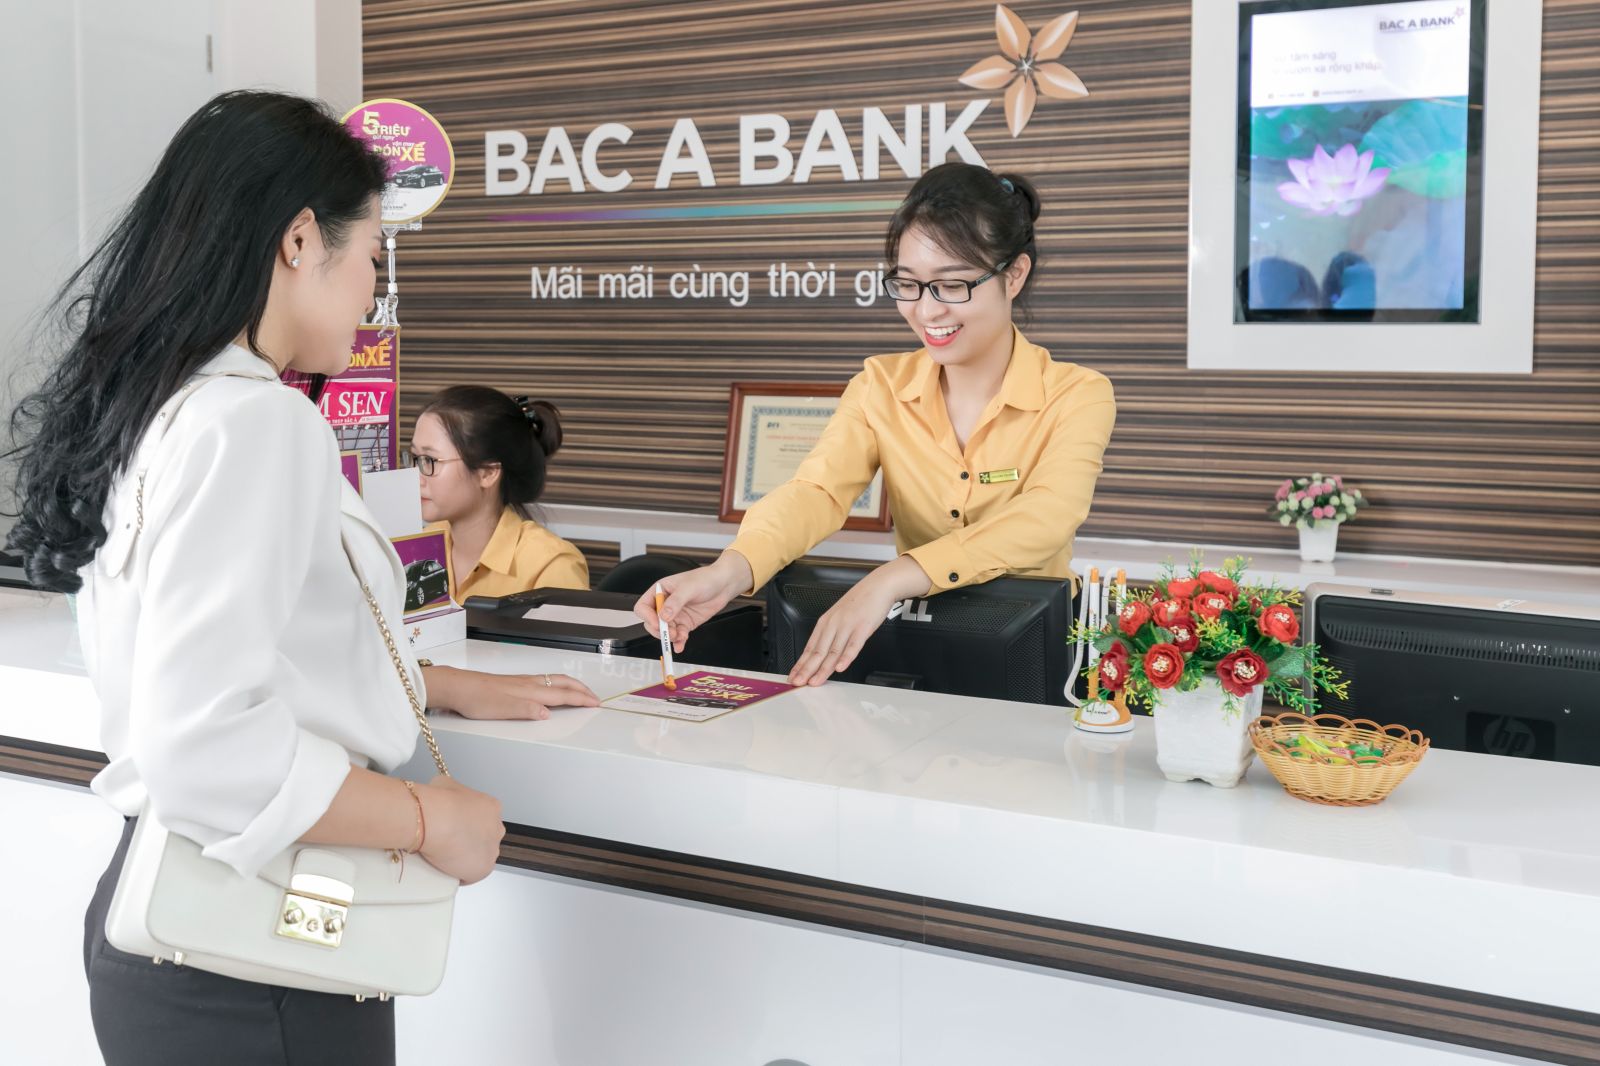 Đánh trúng tâm lý khách hàng nữ với các sản phẩm gần gũi và thiết thực, BAC A BANK là một trong những ngân hàng được chị em tin tưởng lựa chọn 